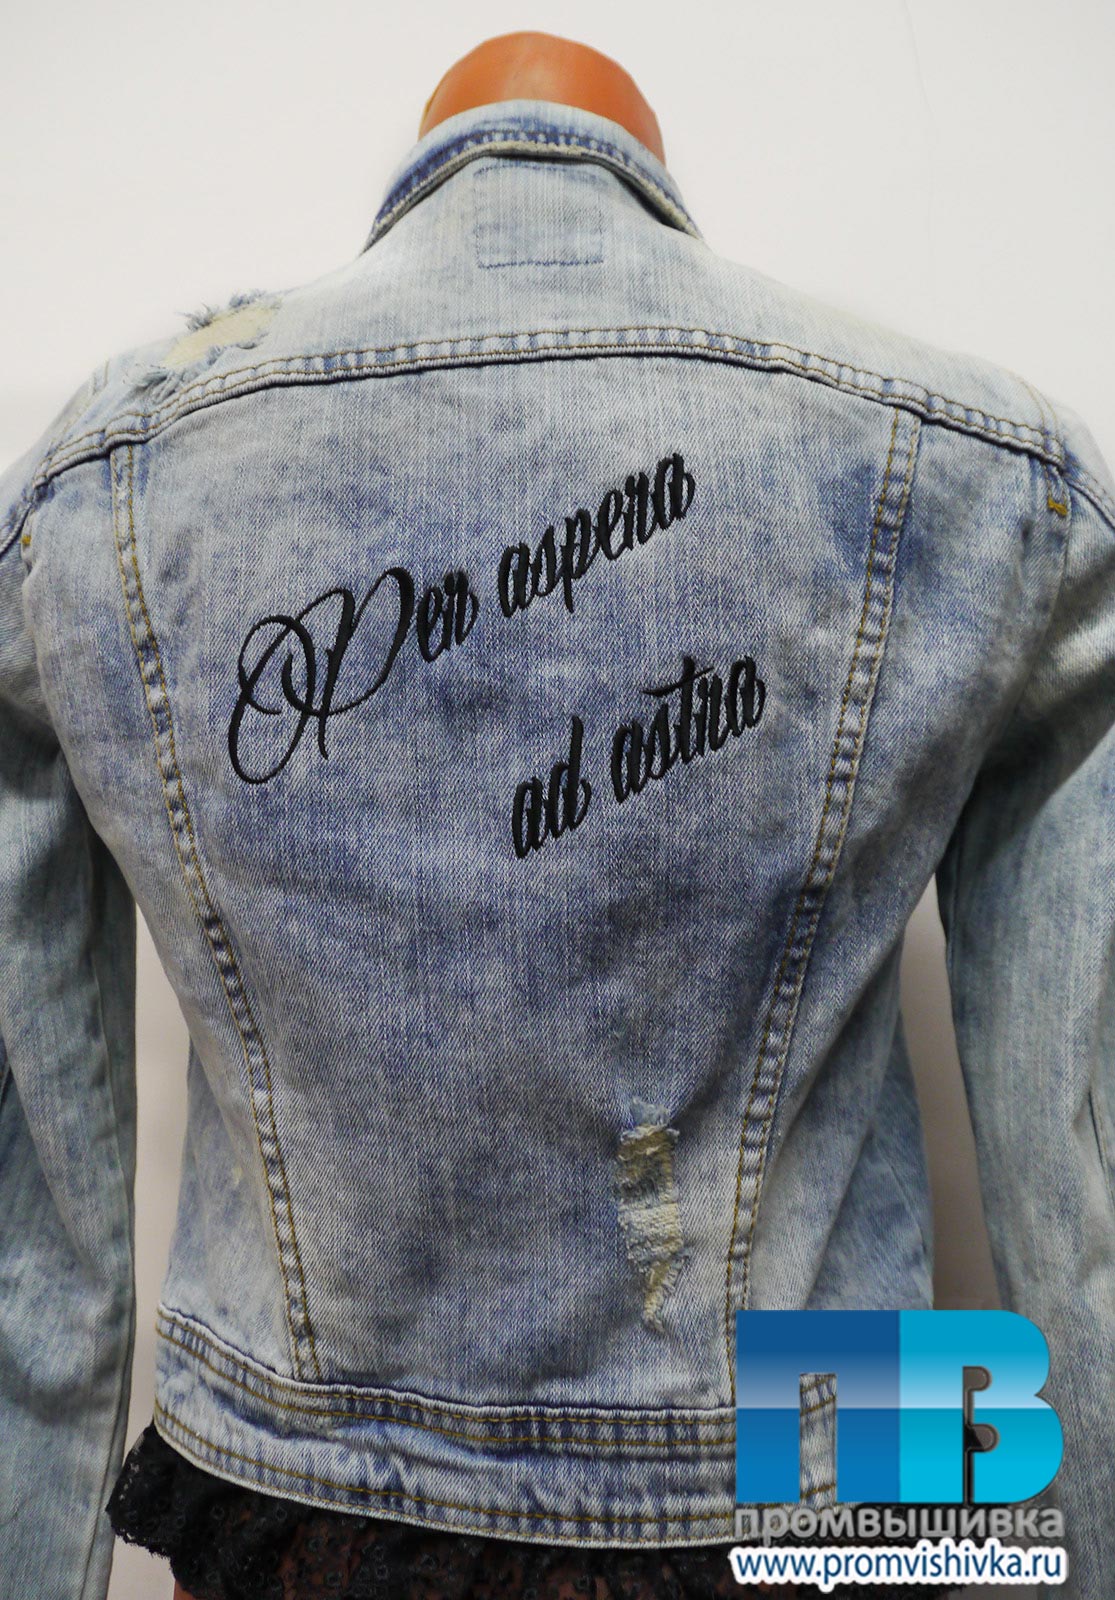 Надписи на джинсовых куртках